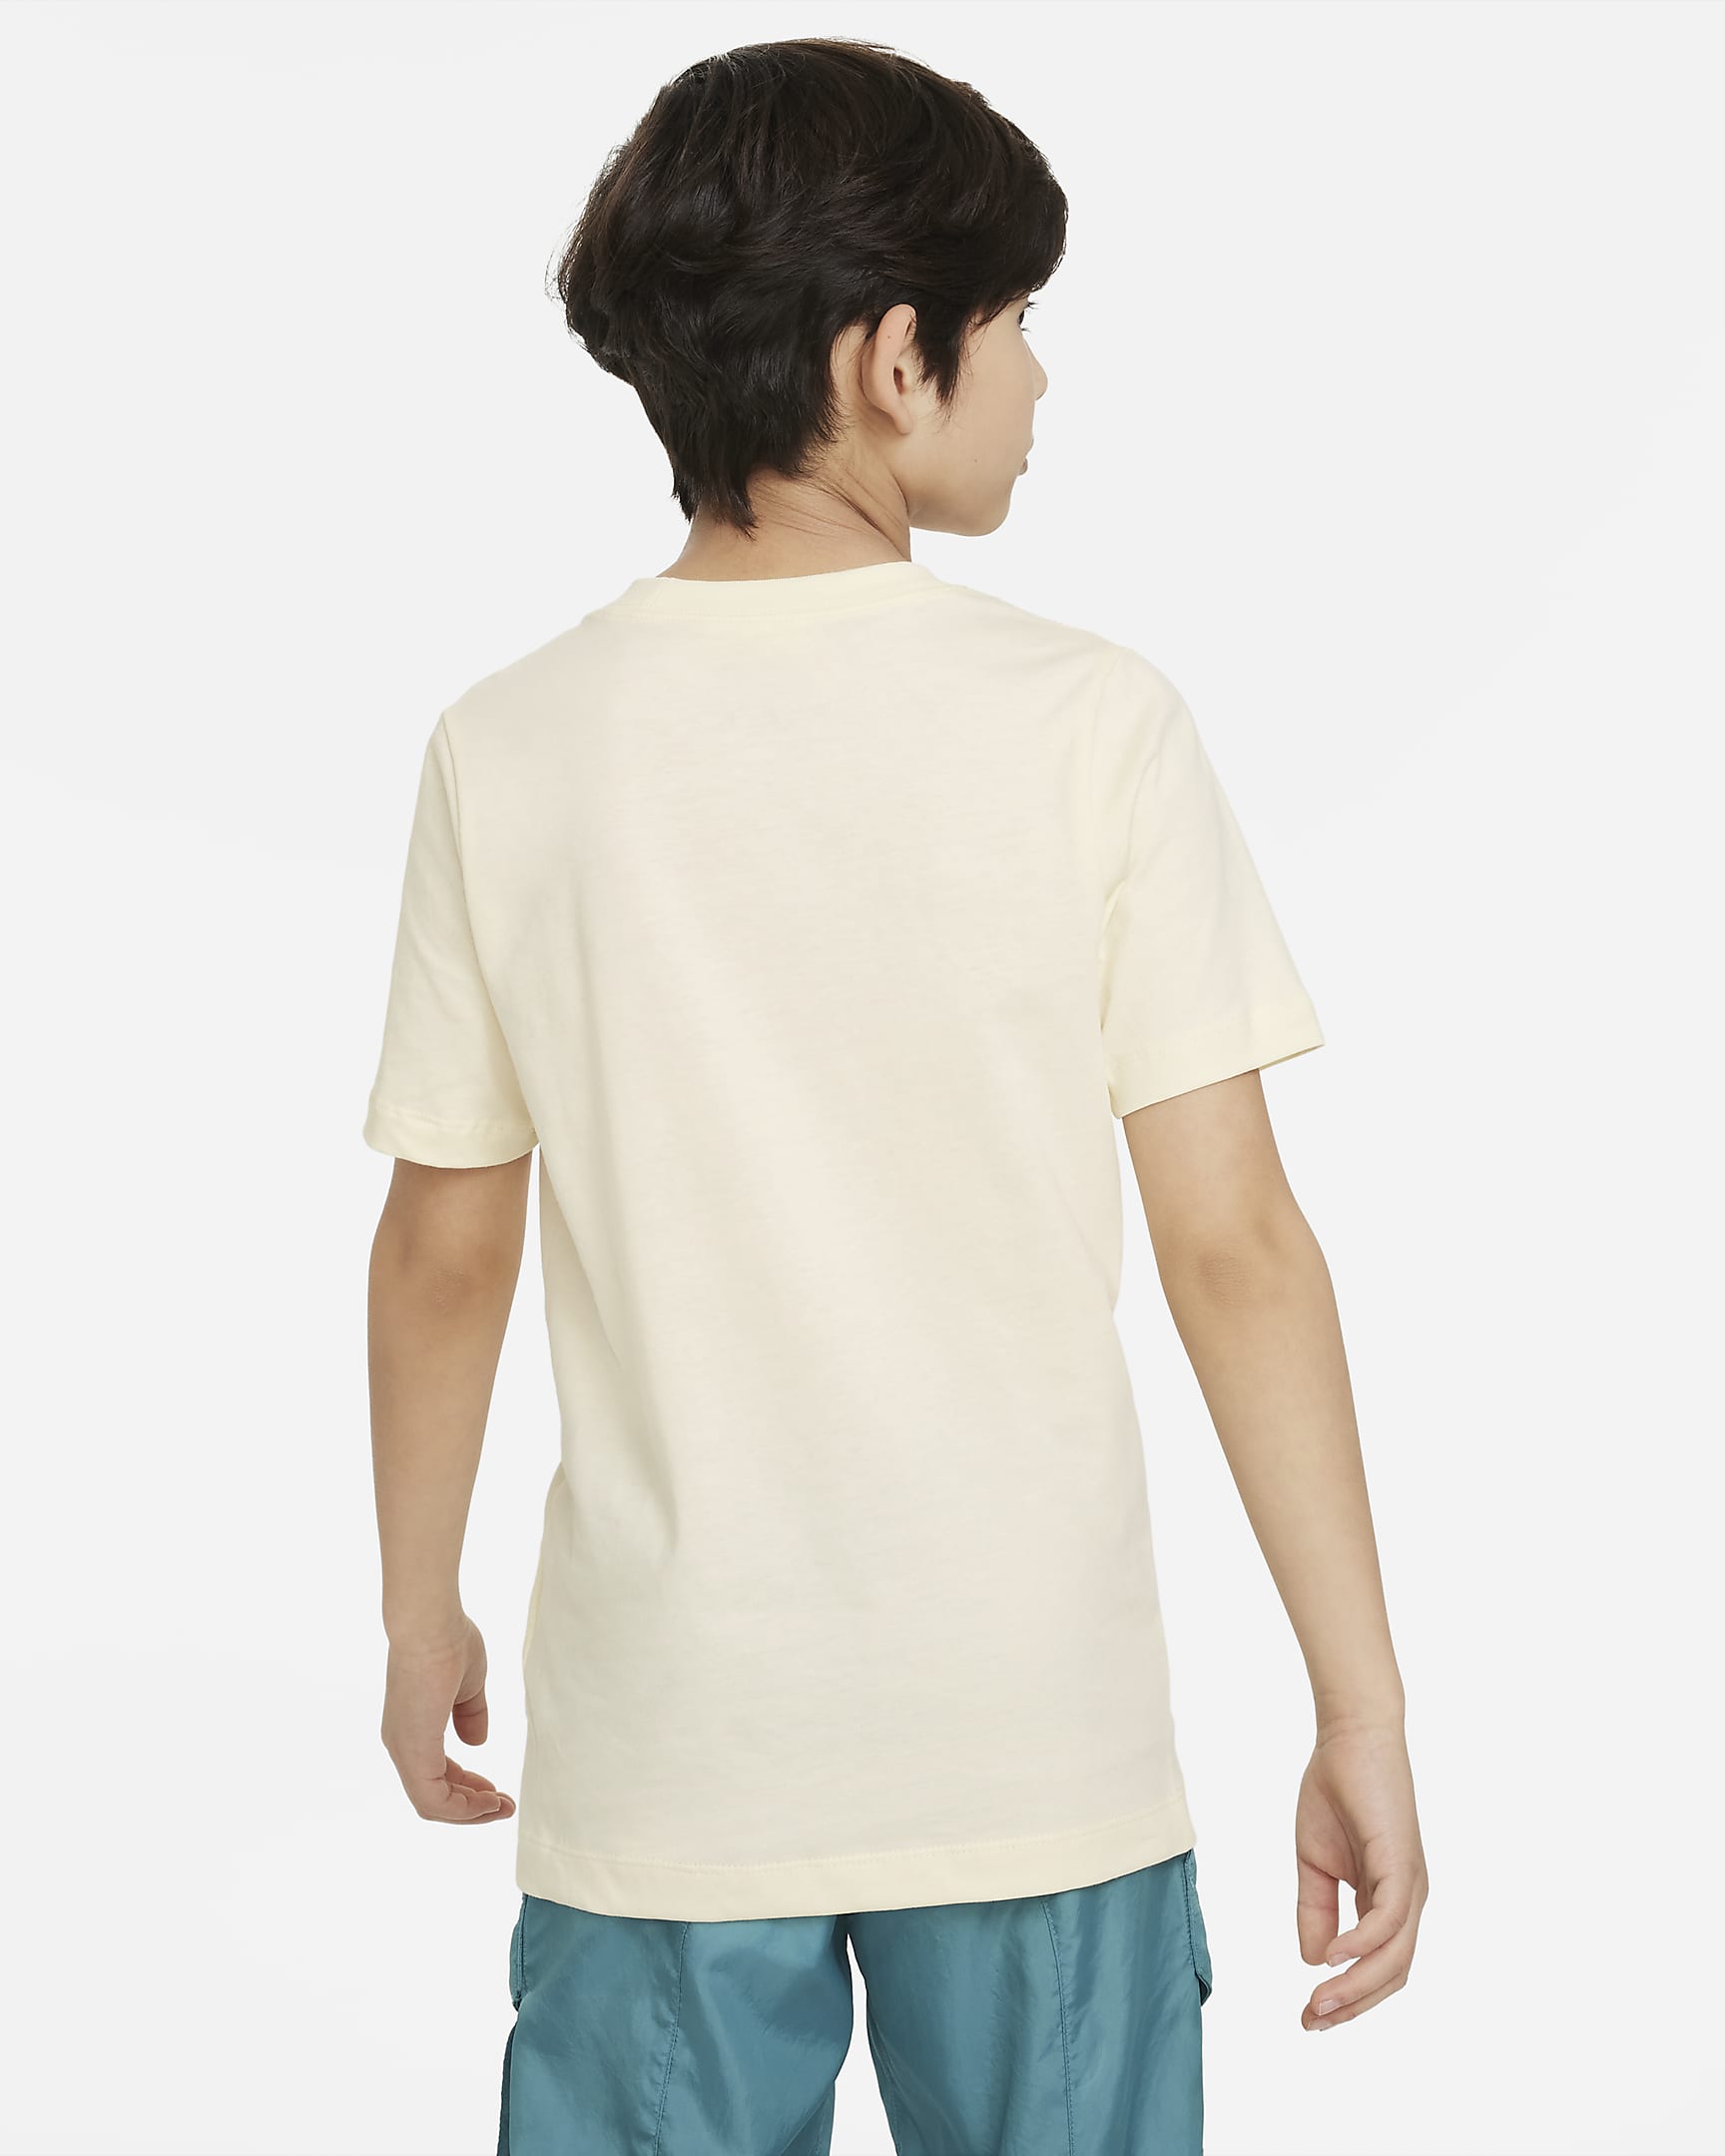 Nike Sportswear Older Kids' (Boys') T-Shirt. Nike VN